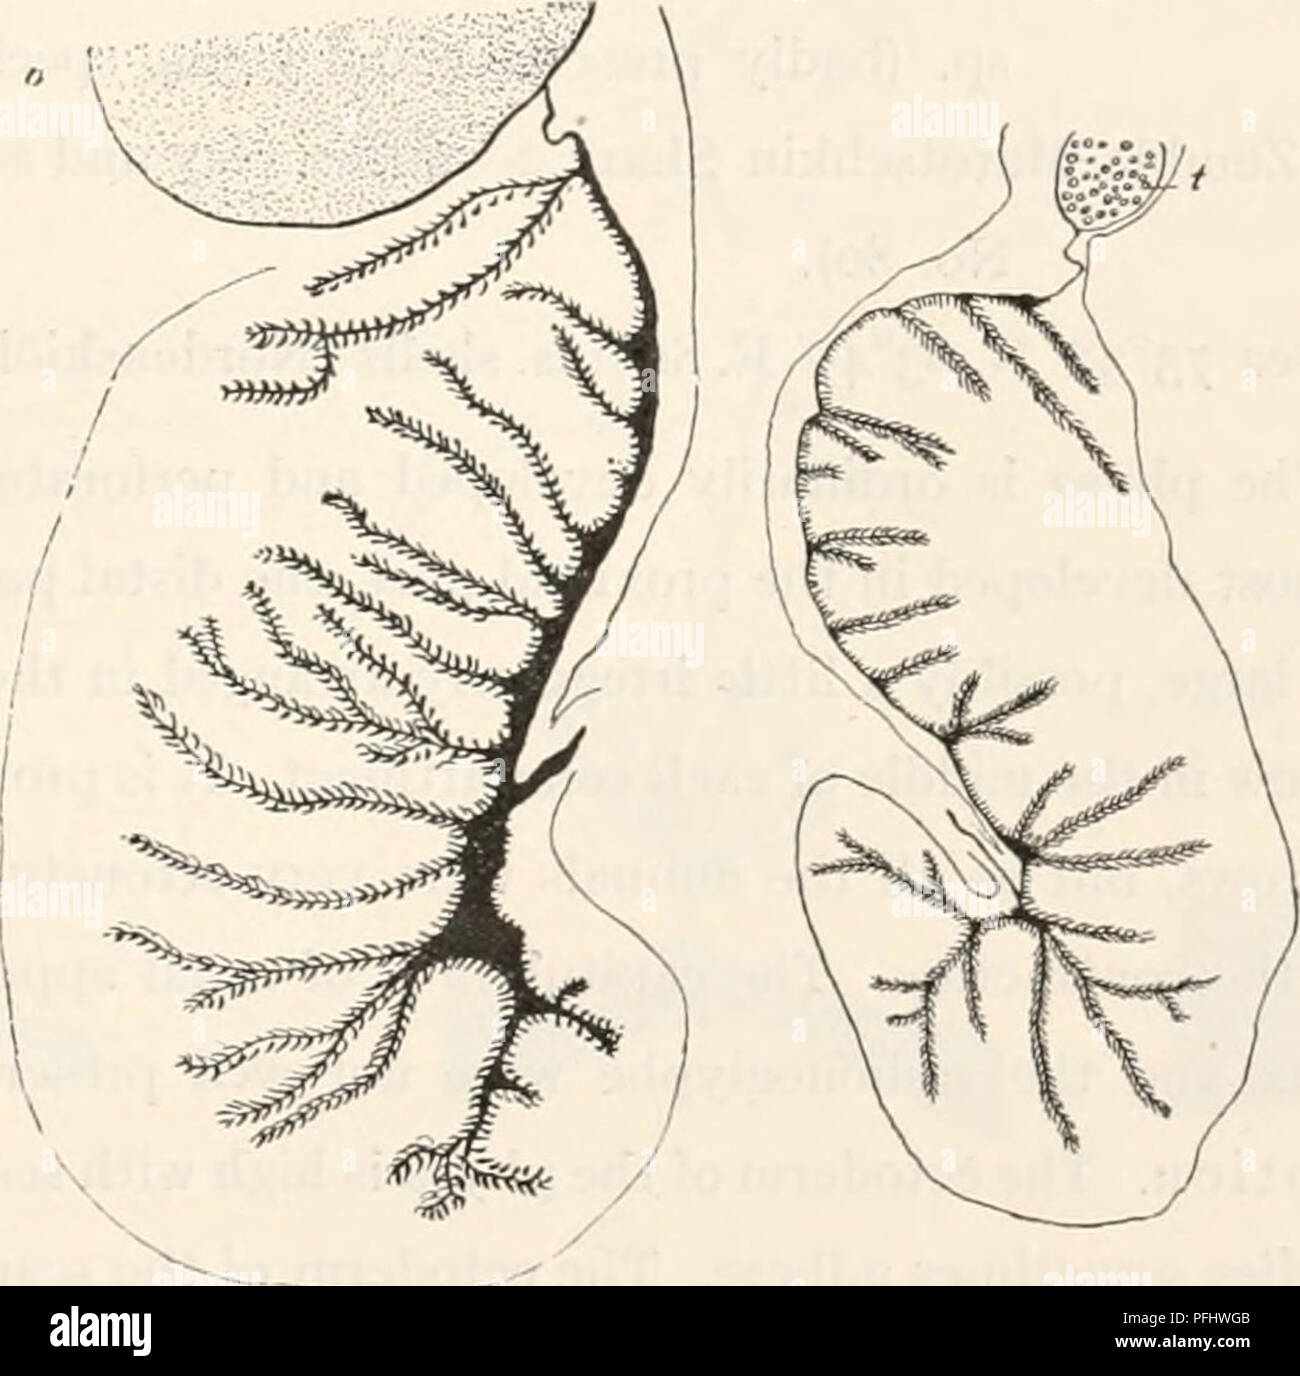 . Le Ingolf-Expedition danois. Expéditions scientifiques ; l'océan Arctique. ACTINIARIA 39 tocysts. Les nématocystes de l'actinopharj nx sont également de deux tailles. La taille de l'spirocysts (sp.) et de nématocystes (n) dans les diverses régions du corps est comme suit. Nemathybomes. n l'habitat capitule tentacules n. .Sp. actinopharynx (Mort du Petit Belt. 1900) - ( - 1912) - (Schiodte) . Le son (St. 27) - (St. 42) - (St. 43 a)... - (St. 30) (Liitken) 29 à 39 X 3-5-4 ft 24-33 X (2,5) 3 (2,5 X 26-43* 3-3.5 29-41 X 3-5-4 24-41 X 32-43 X 3 3 29-43 X 3-3,5 26 à 41 X 3-3.5 31-43 X 3-3.5 55-72 X 5 u 55-65 X 46-55 X 5 Banque D'Images